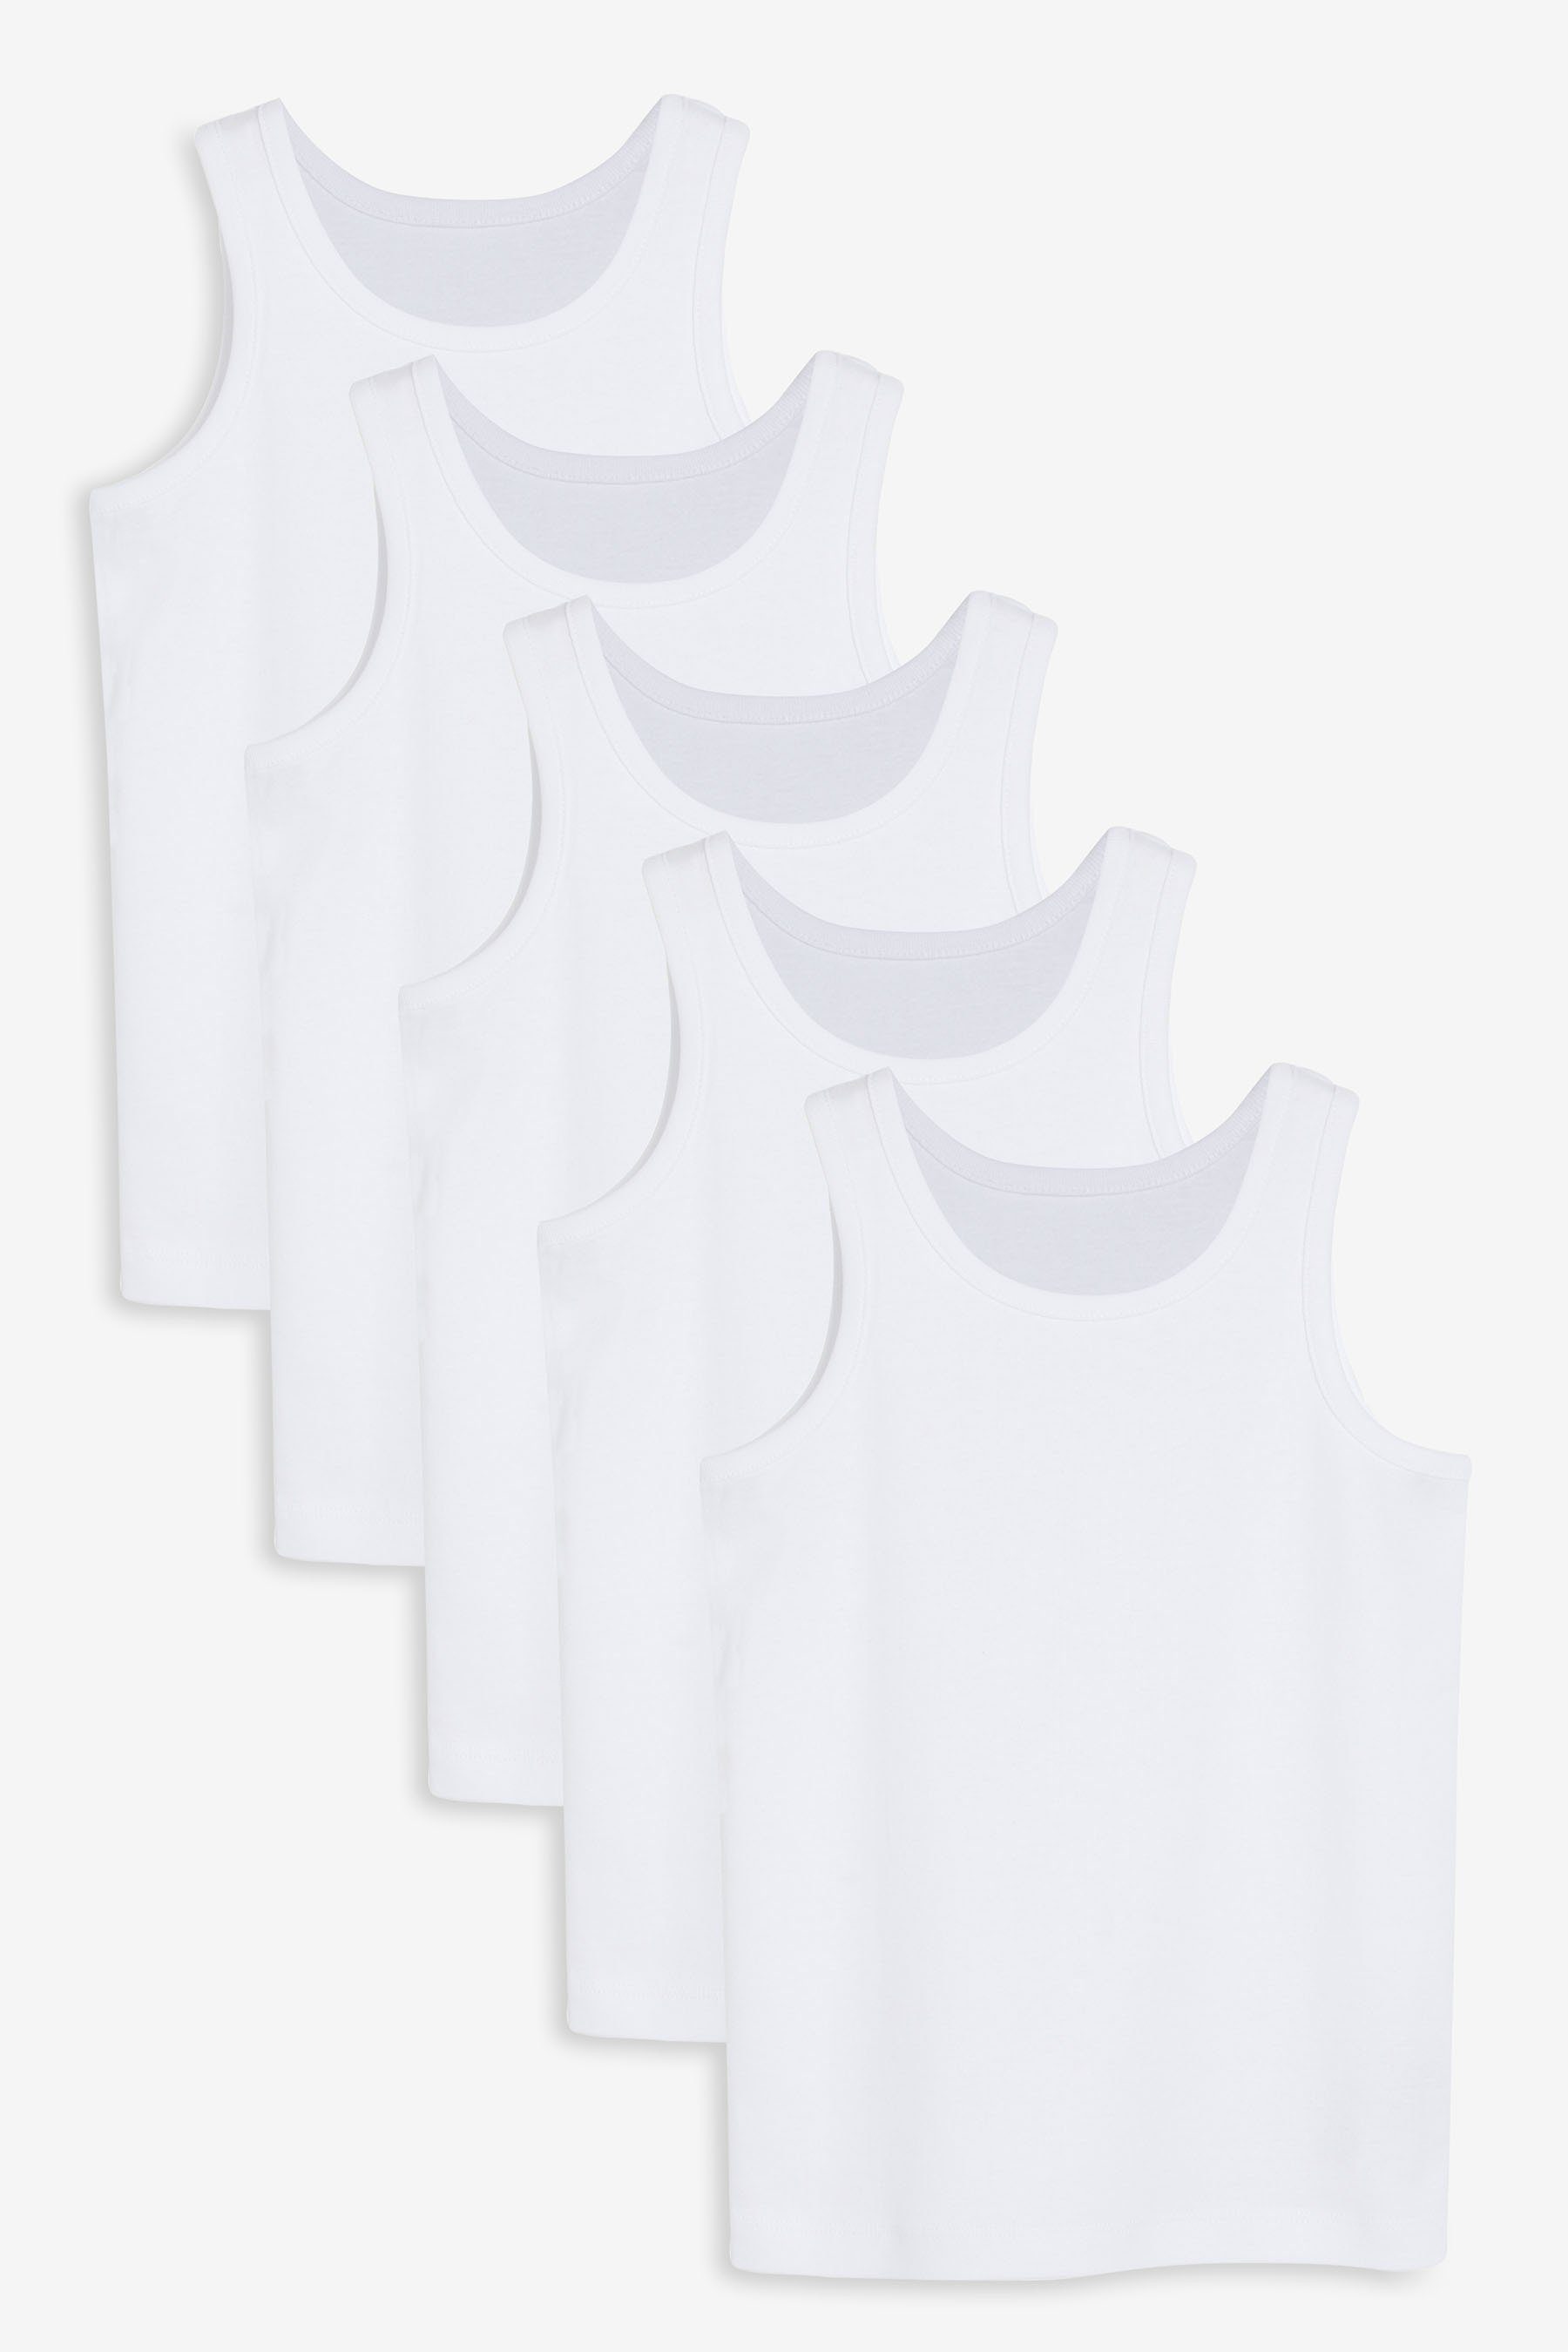 Next Unterhemd Unterhemden aus, 5er-Pack (5-St) White